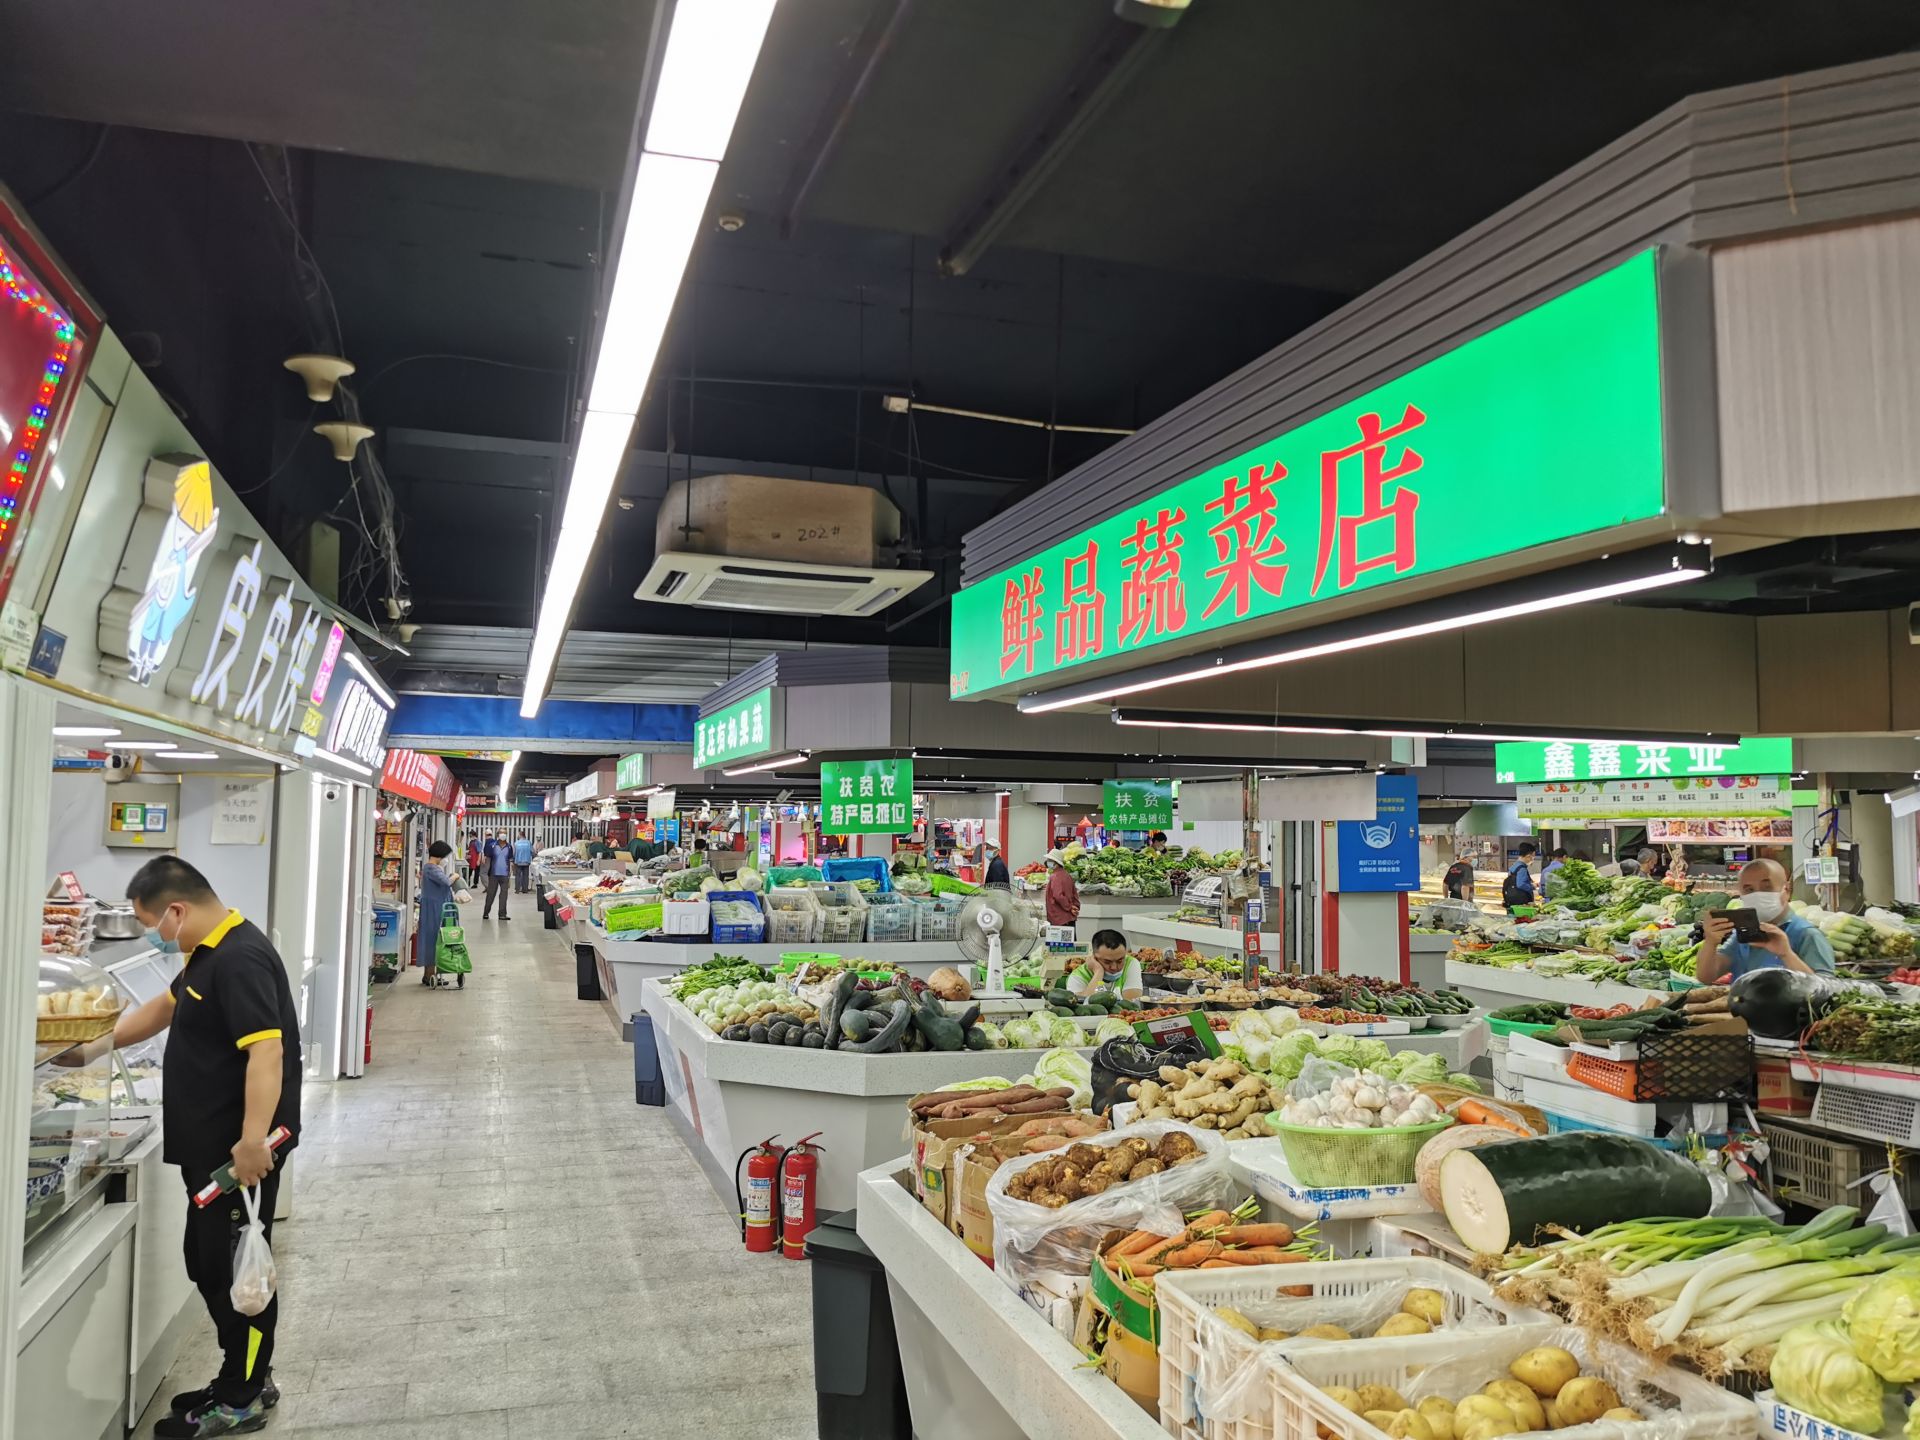 街里特色小吃街 - 市场导航 - 青岛市城阳蔬菜水产品批发市场